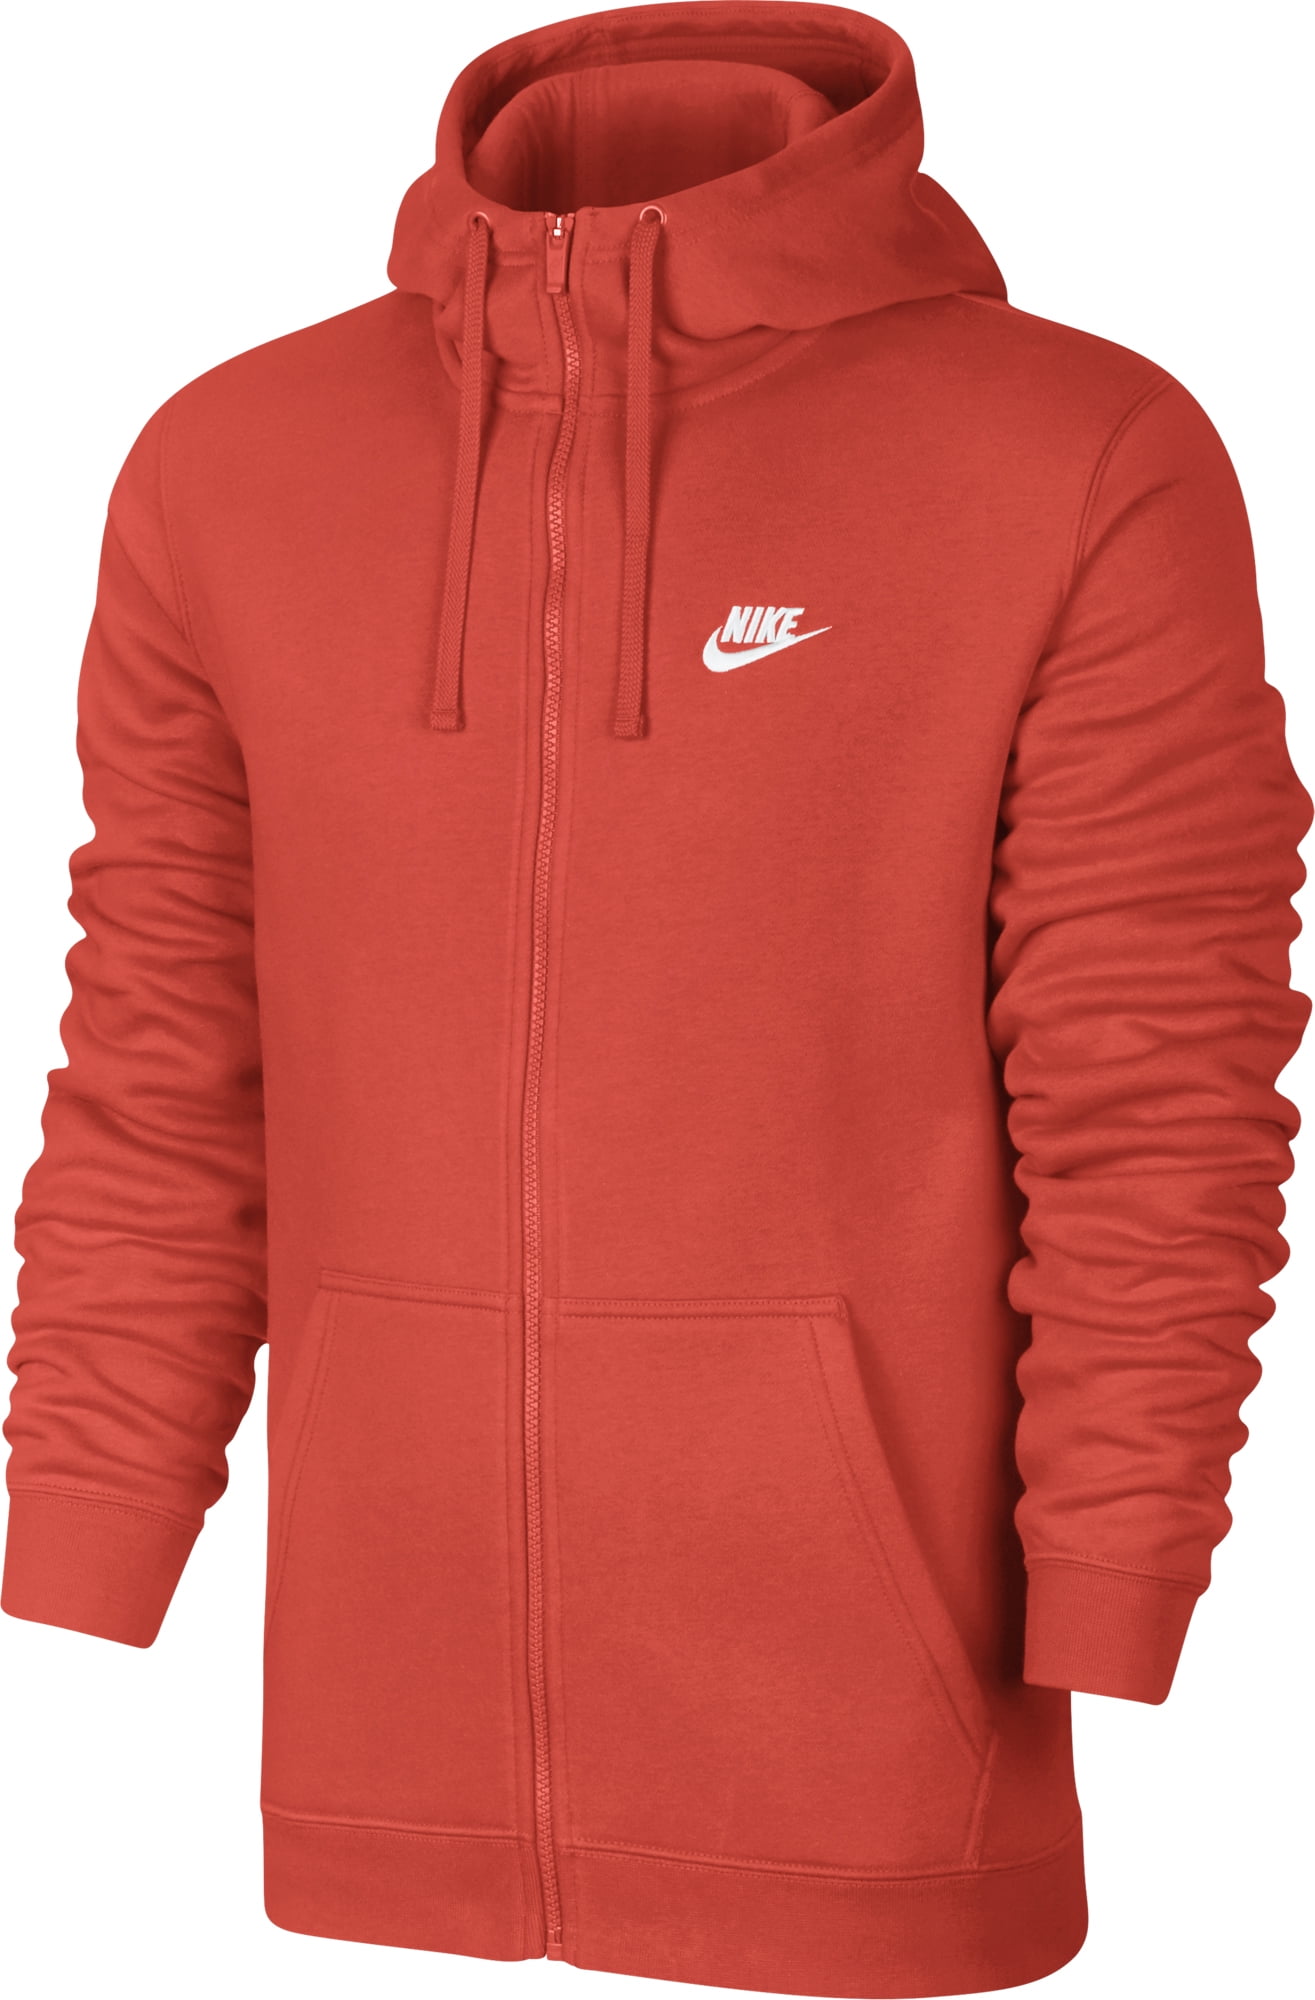 Nike - Nike Men's Sportswear Hoodie Max Orange/White Large - Walmart ...